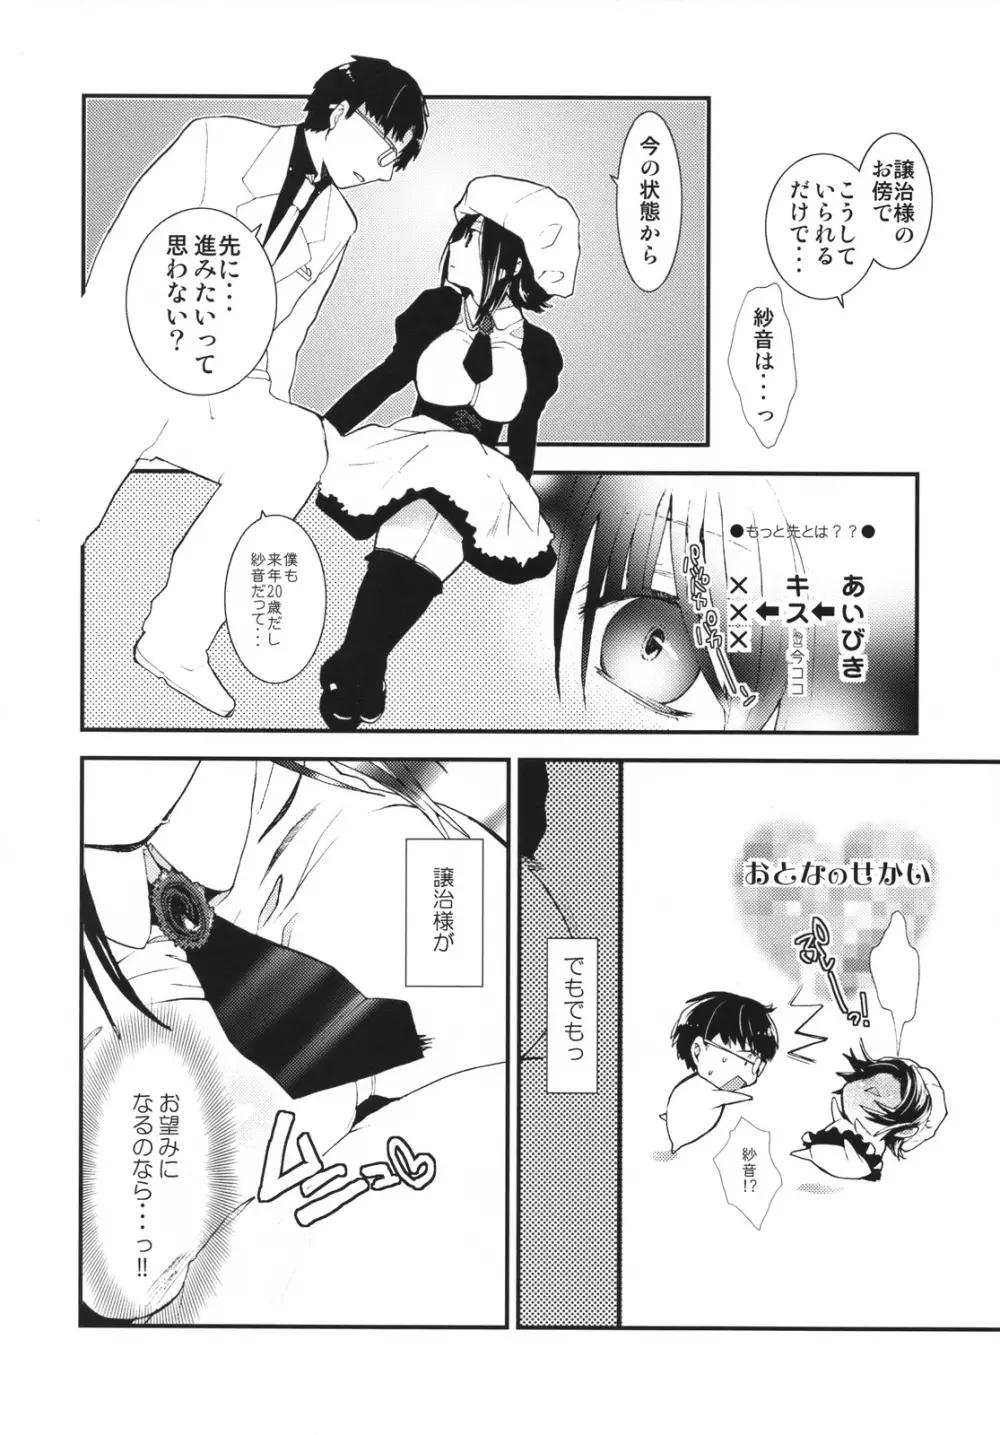 Umineko sono higurashi - page5